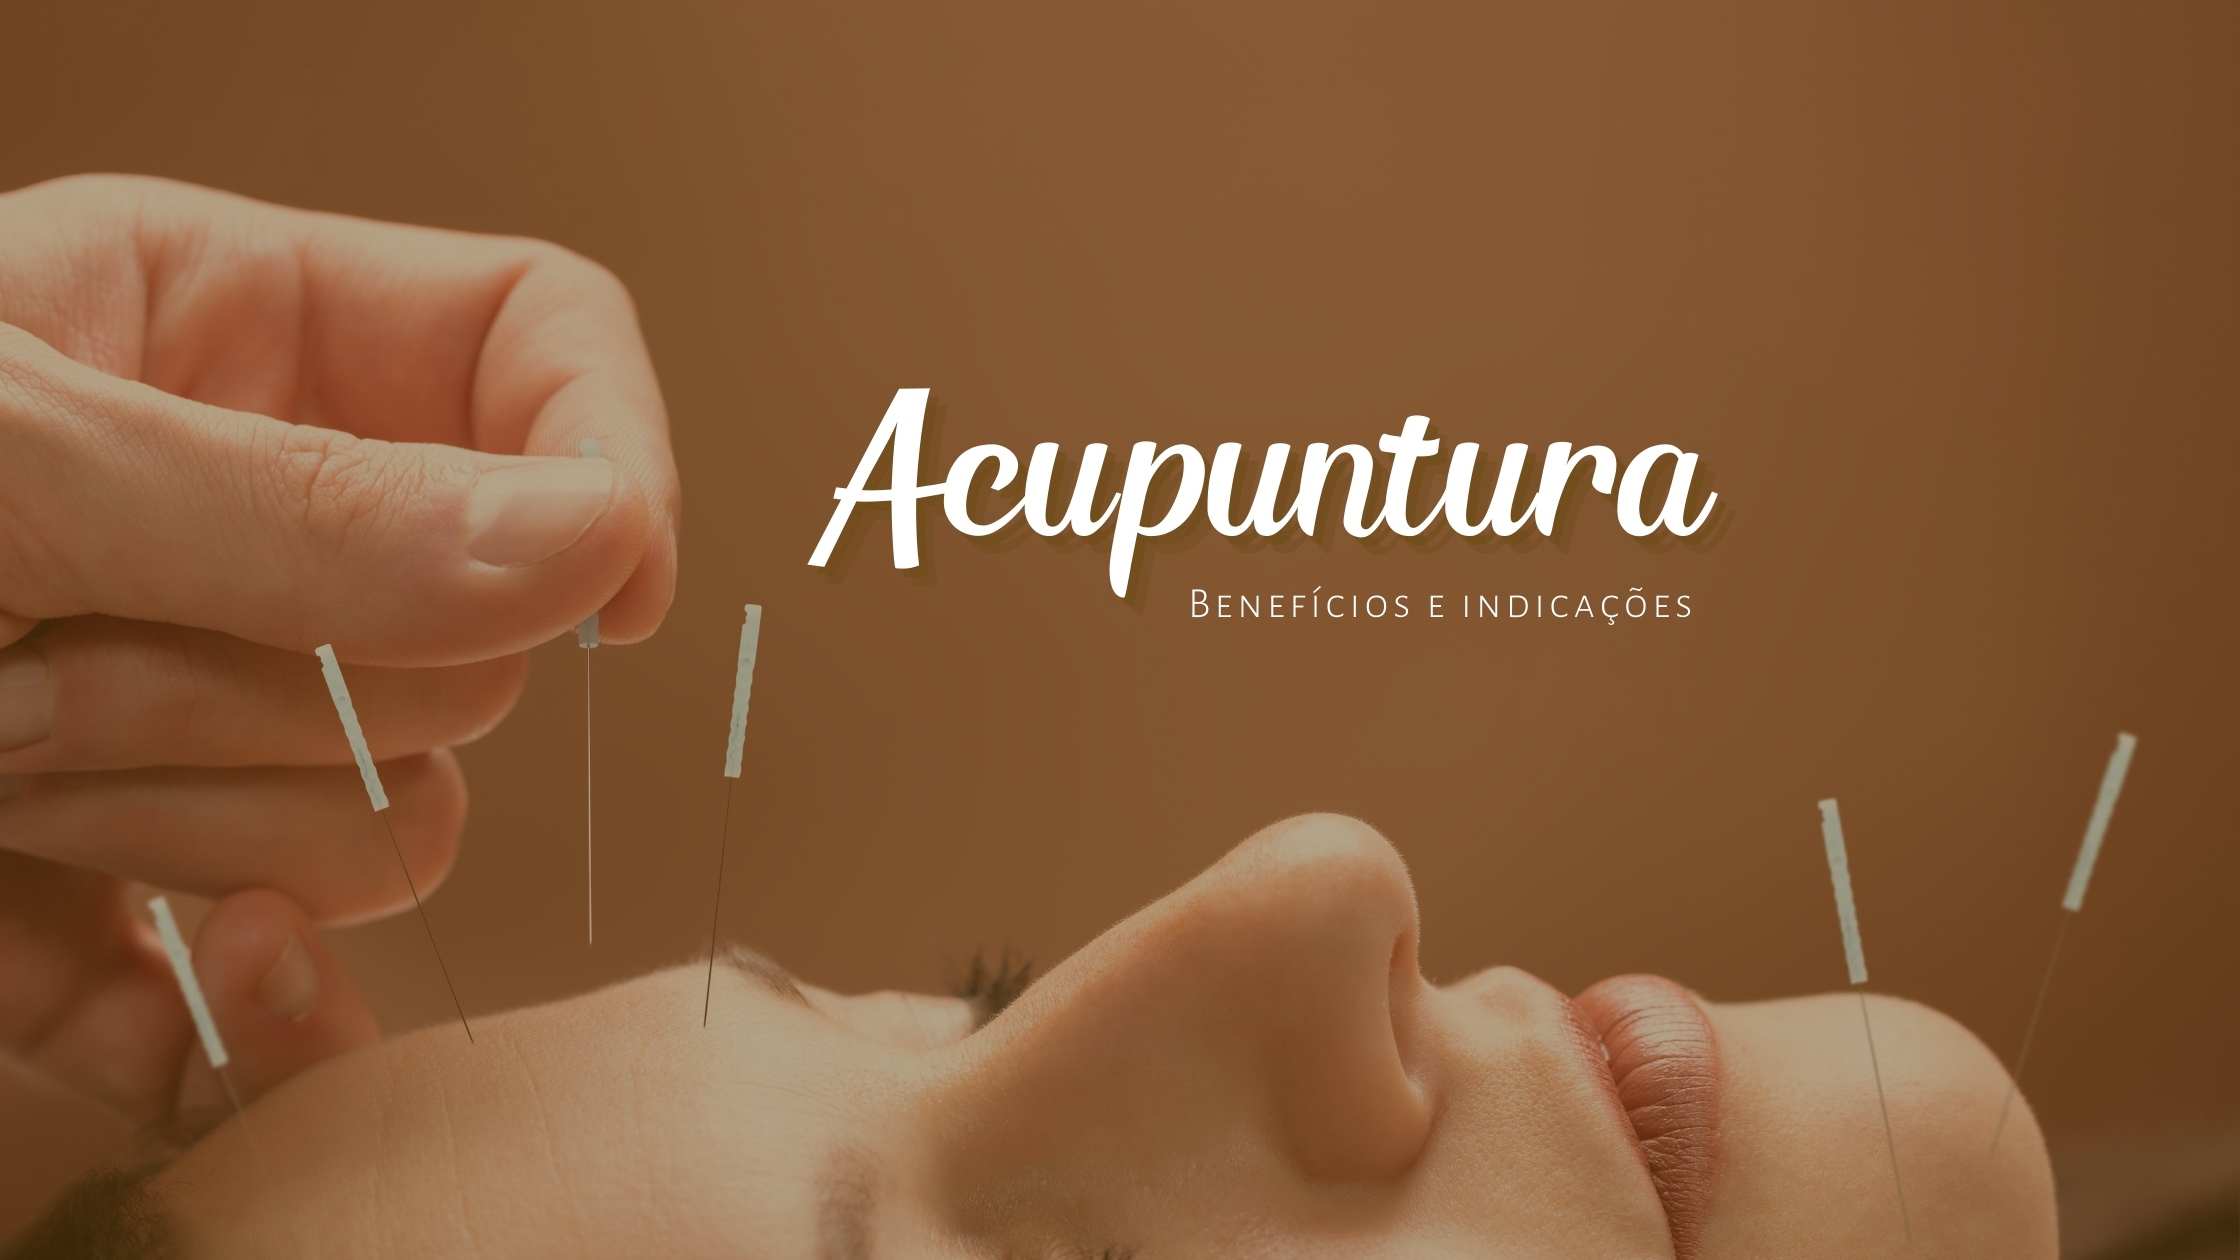 Quais so as principais indicaes e benefcios da acupuntura?